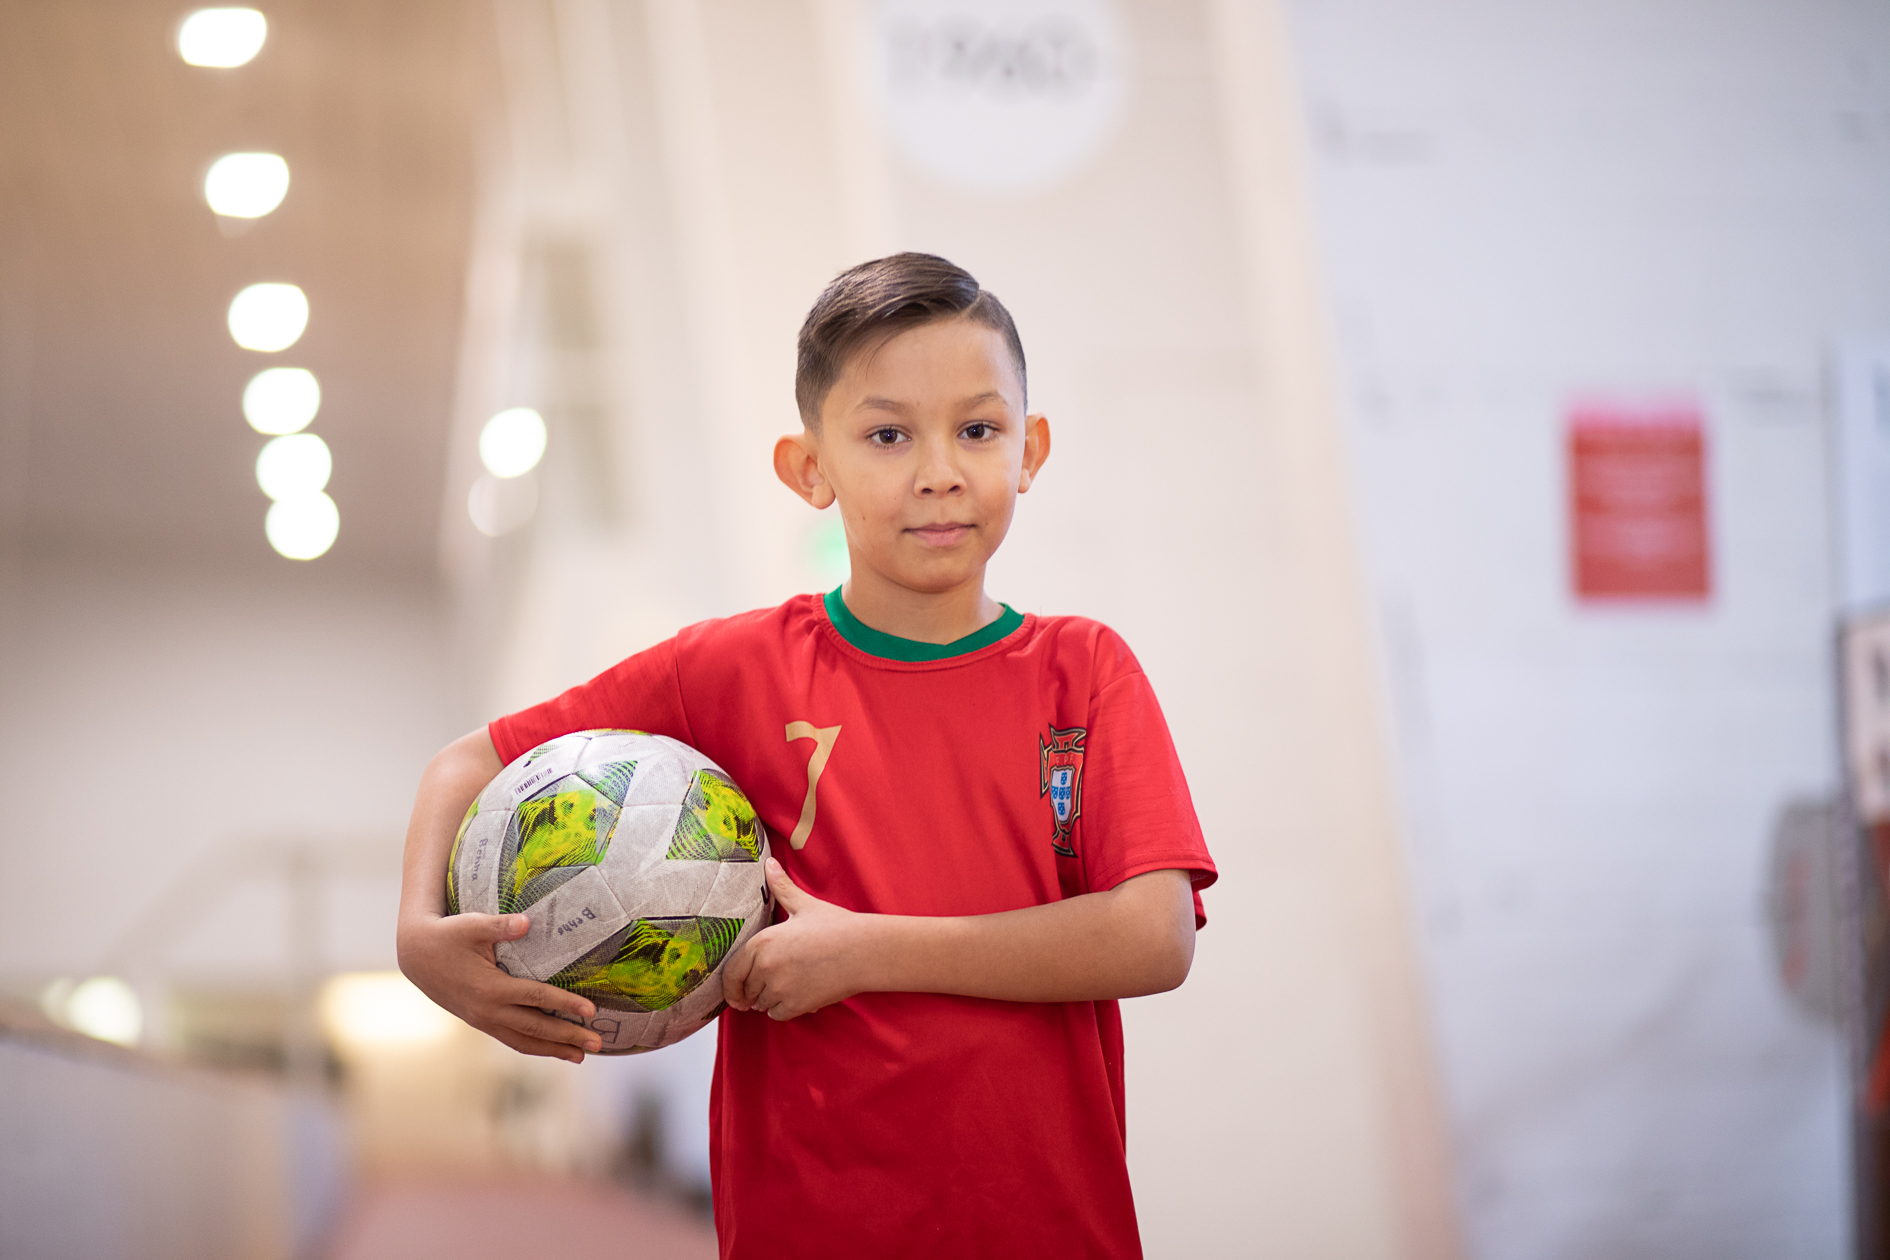 Poika pitelee jalkapalloa käsissä.